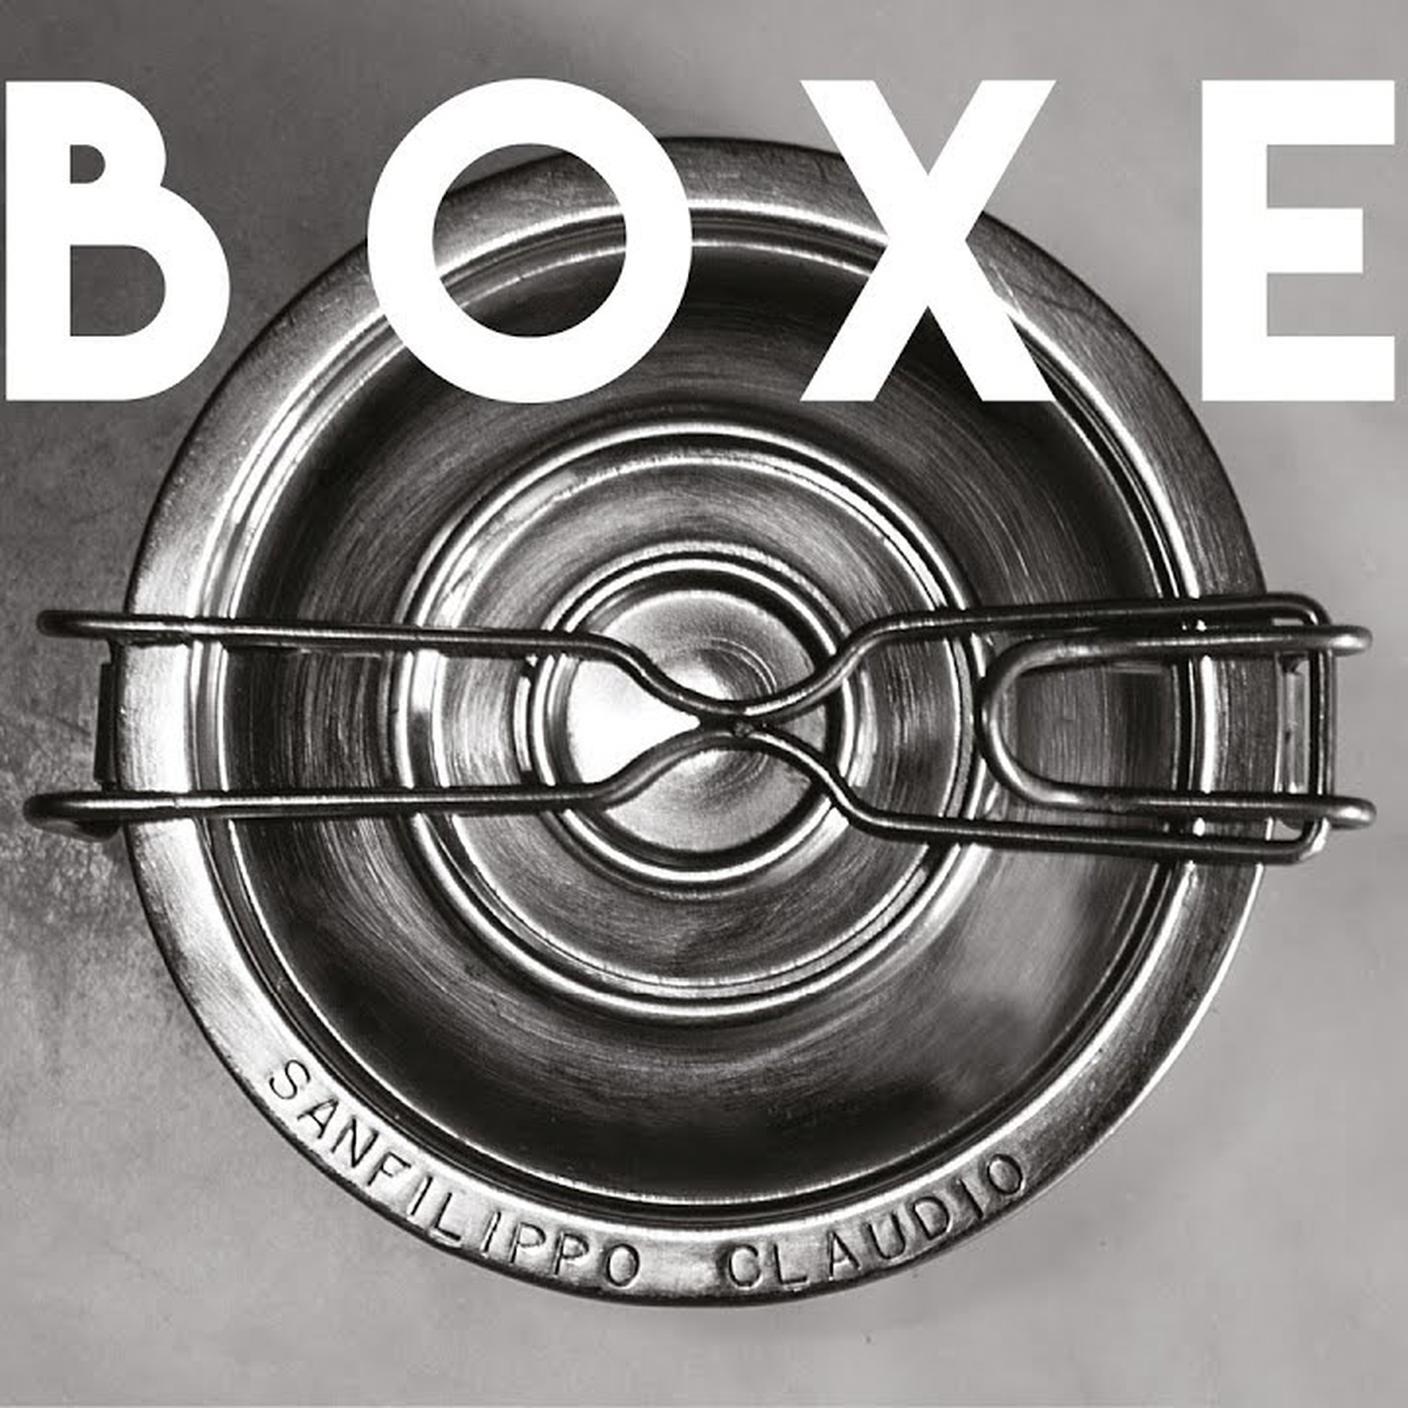 Claudio Sanfilippo, "Boxe", Maremmano Records (dettaglio copertina)